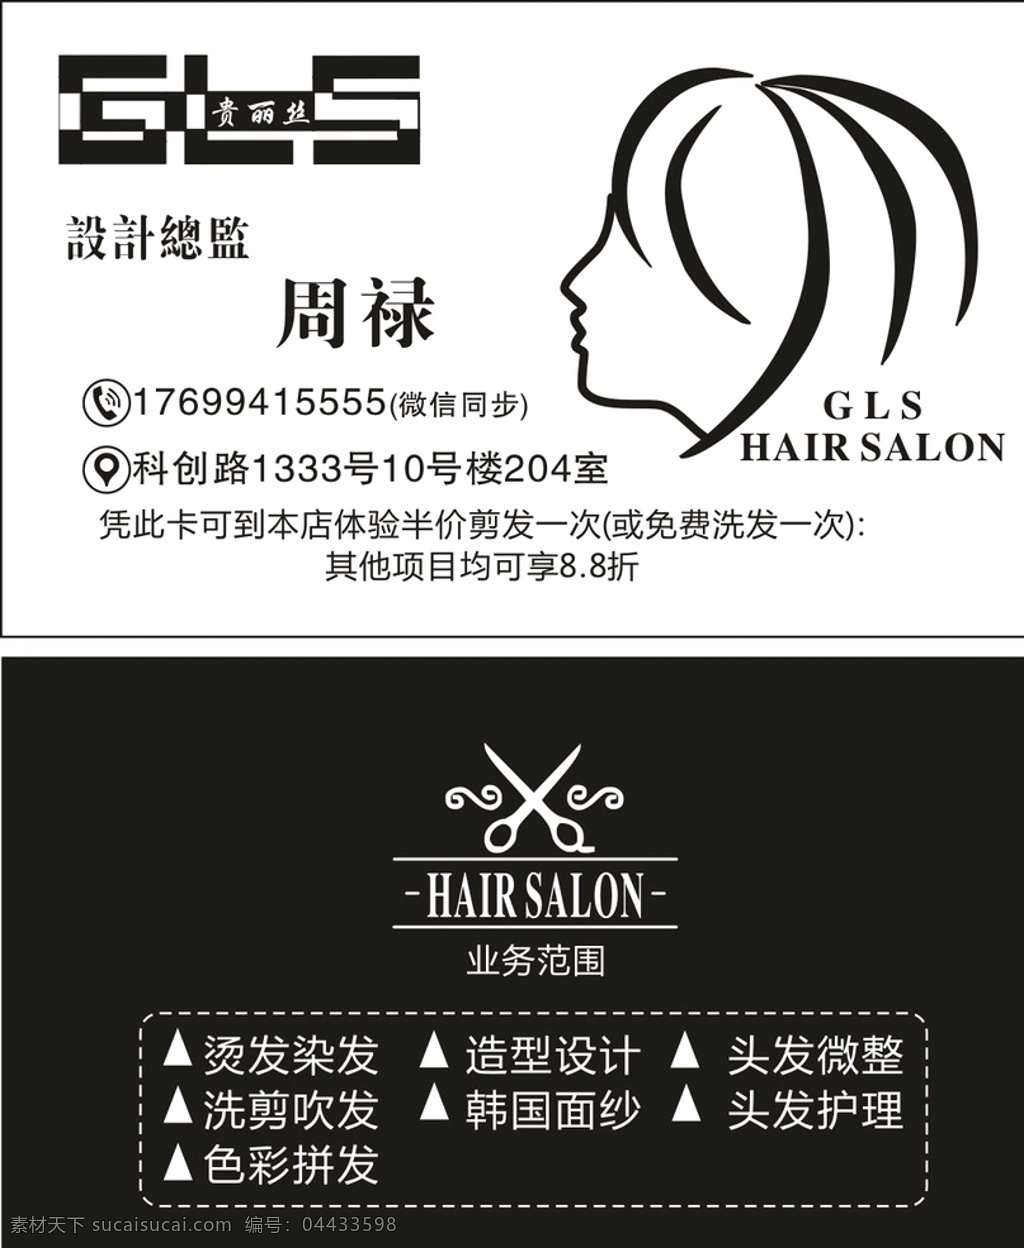 贵丽丝理发店 贵丽丝剪发 设计总监 免费洗发 烫发染发 洗剪吹发 名片卡片